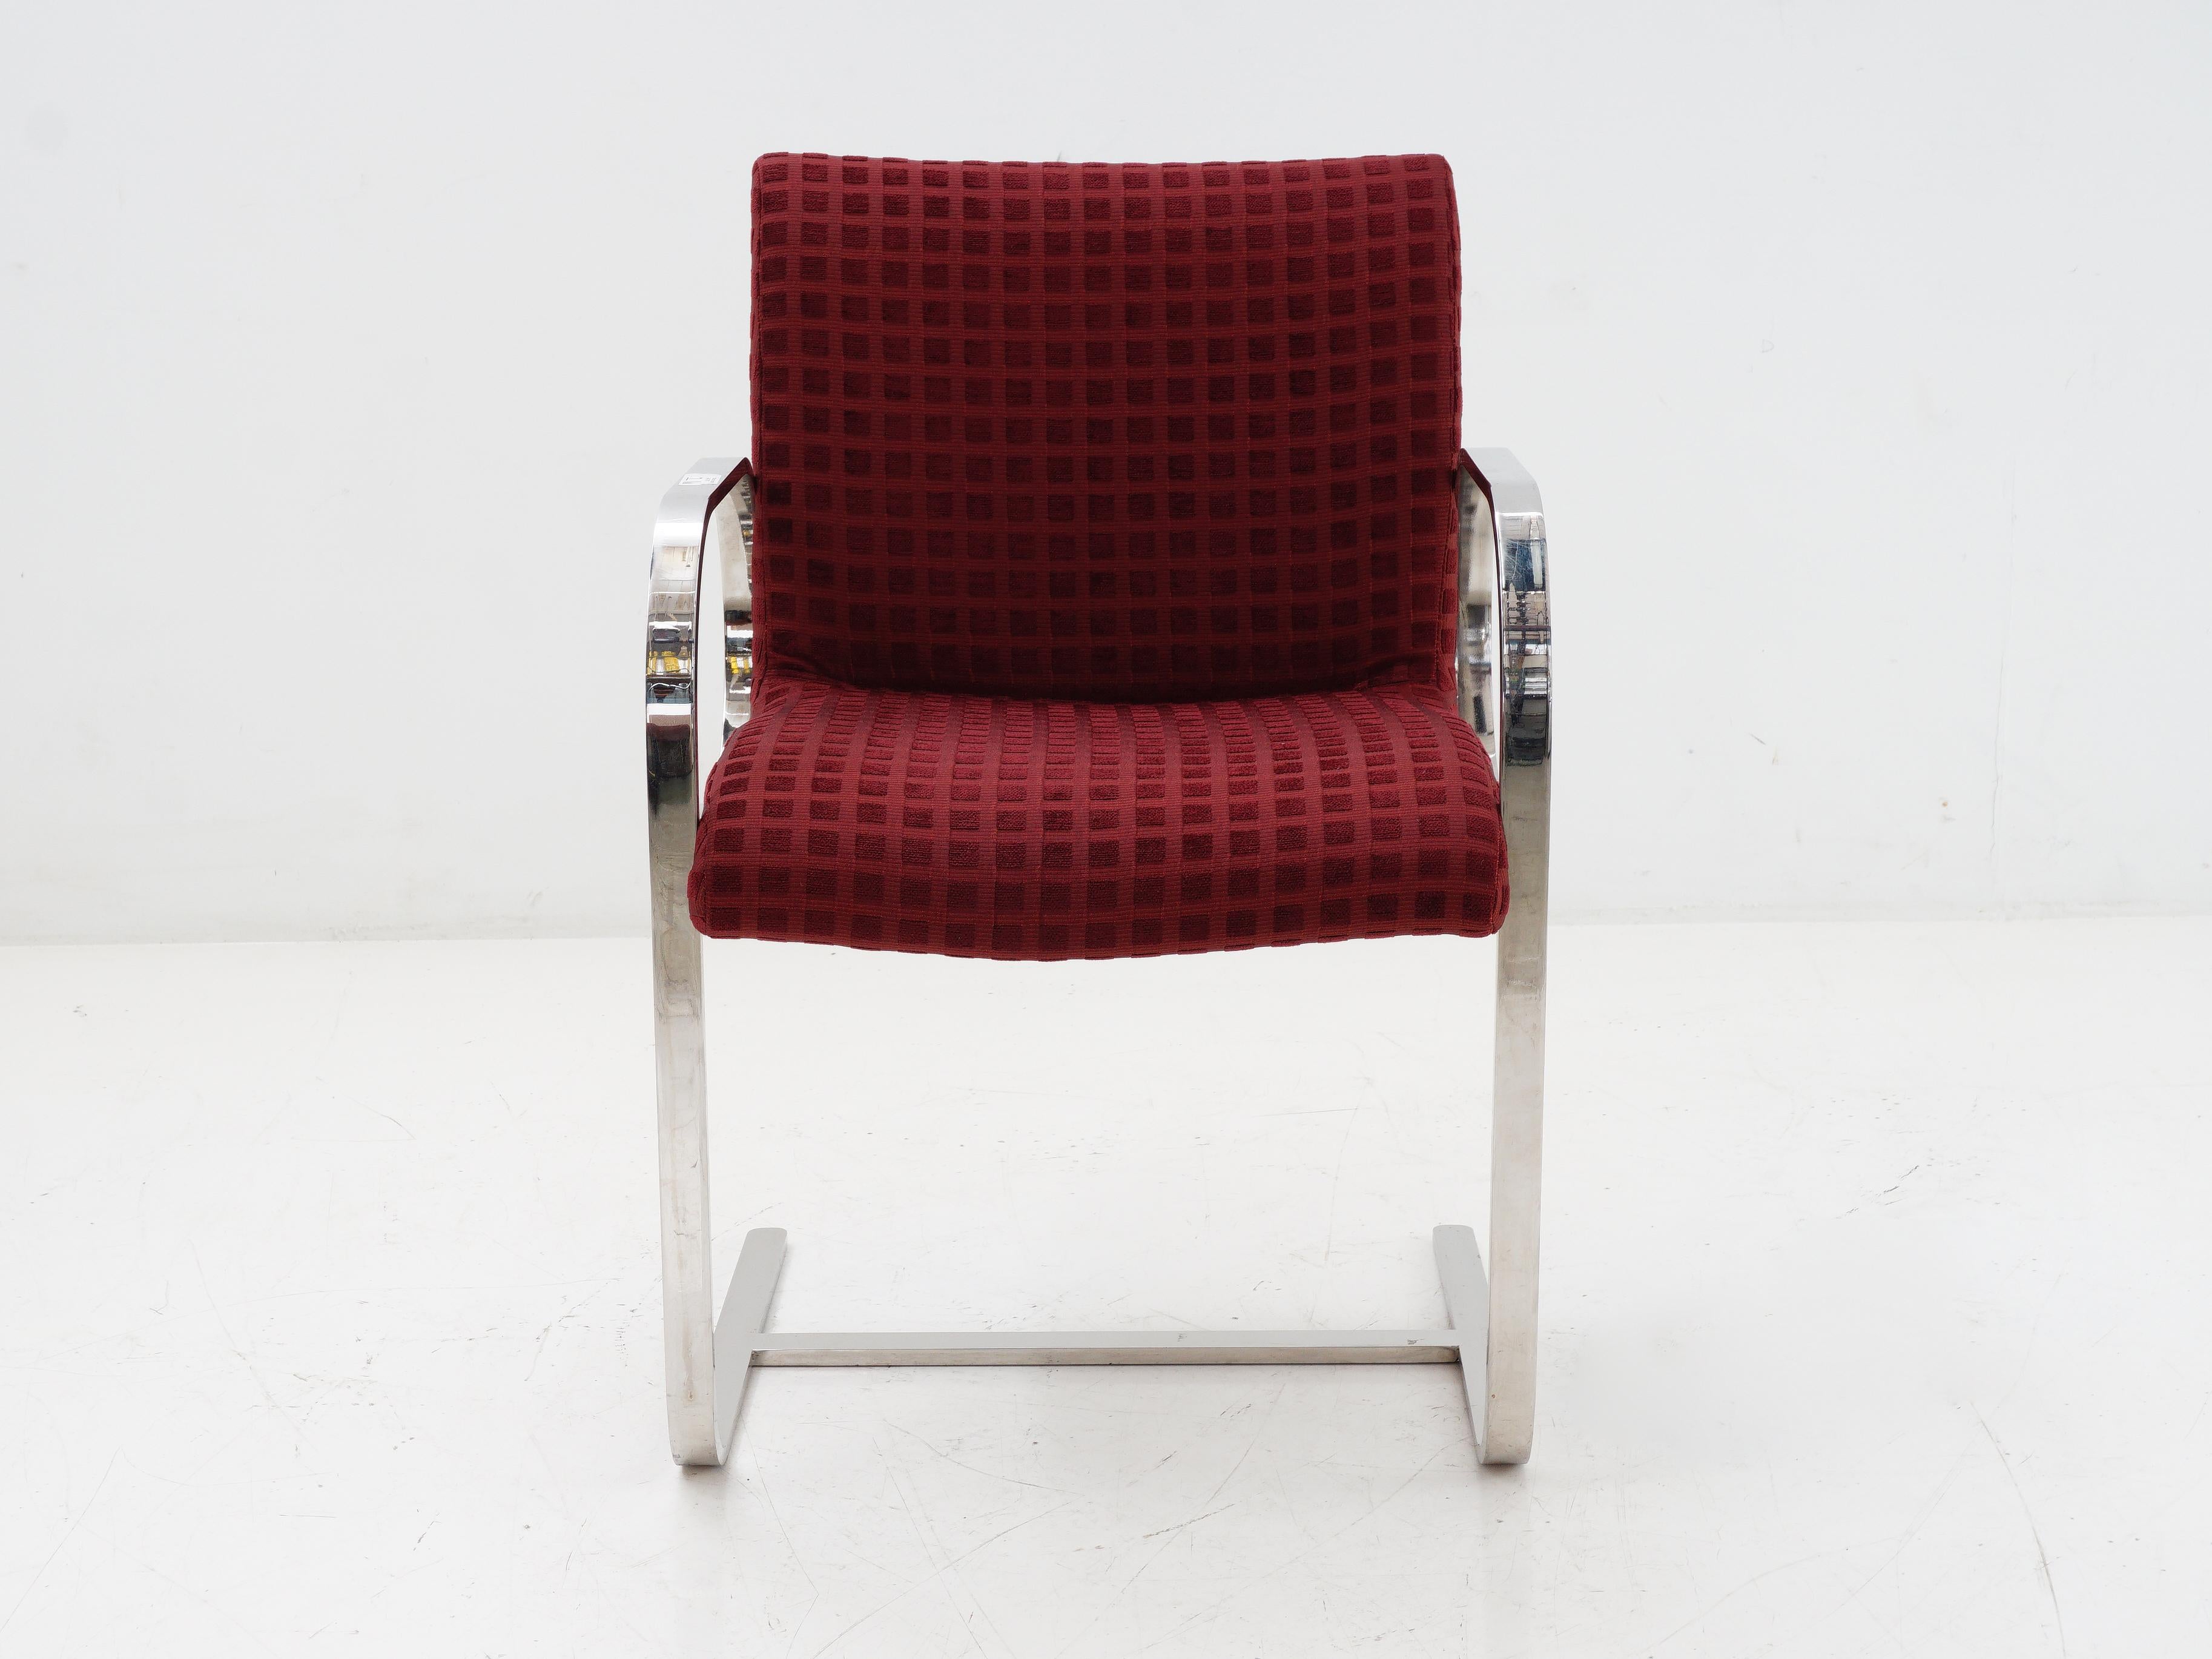 Fin du 20e siècle Chaise cantilever à barre plate chromée, 1970